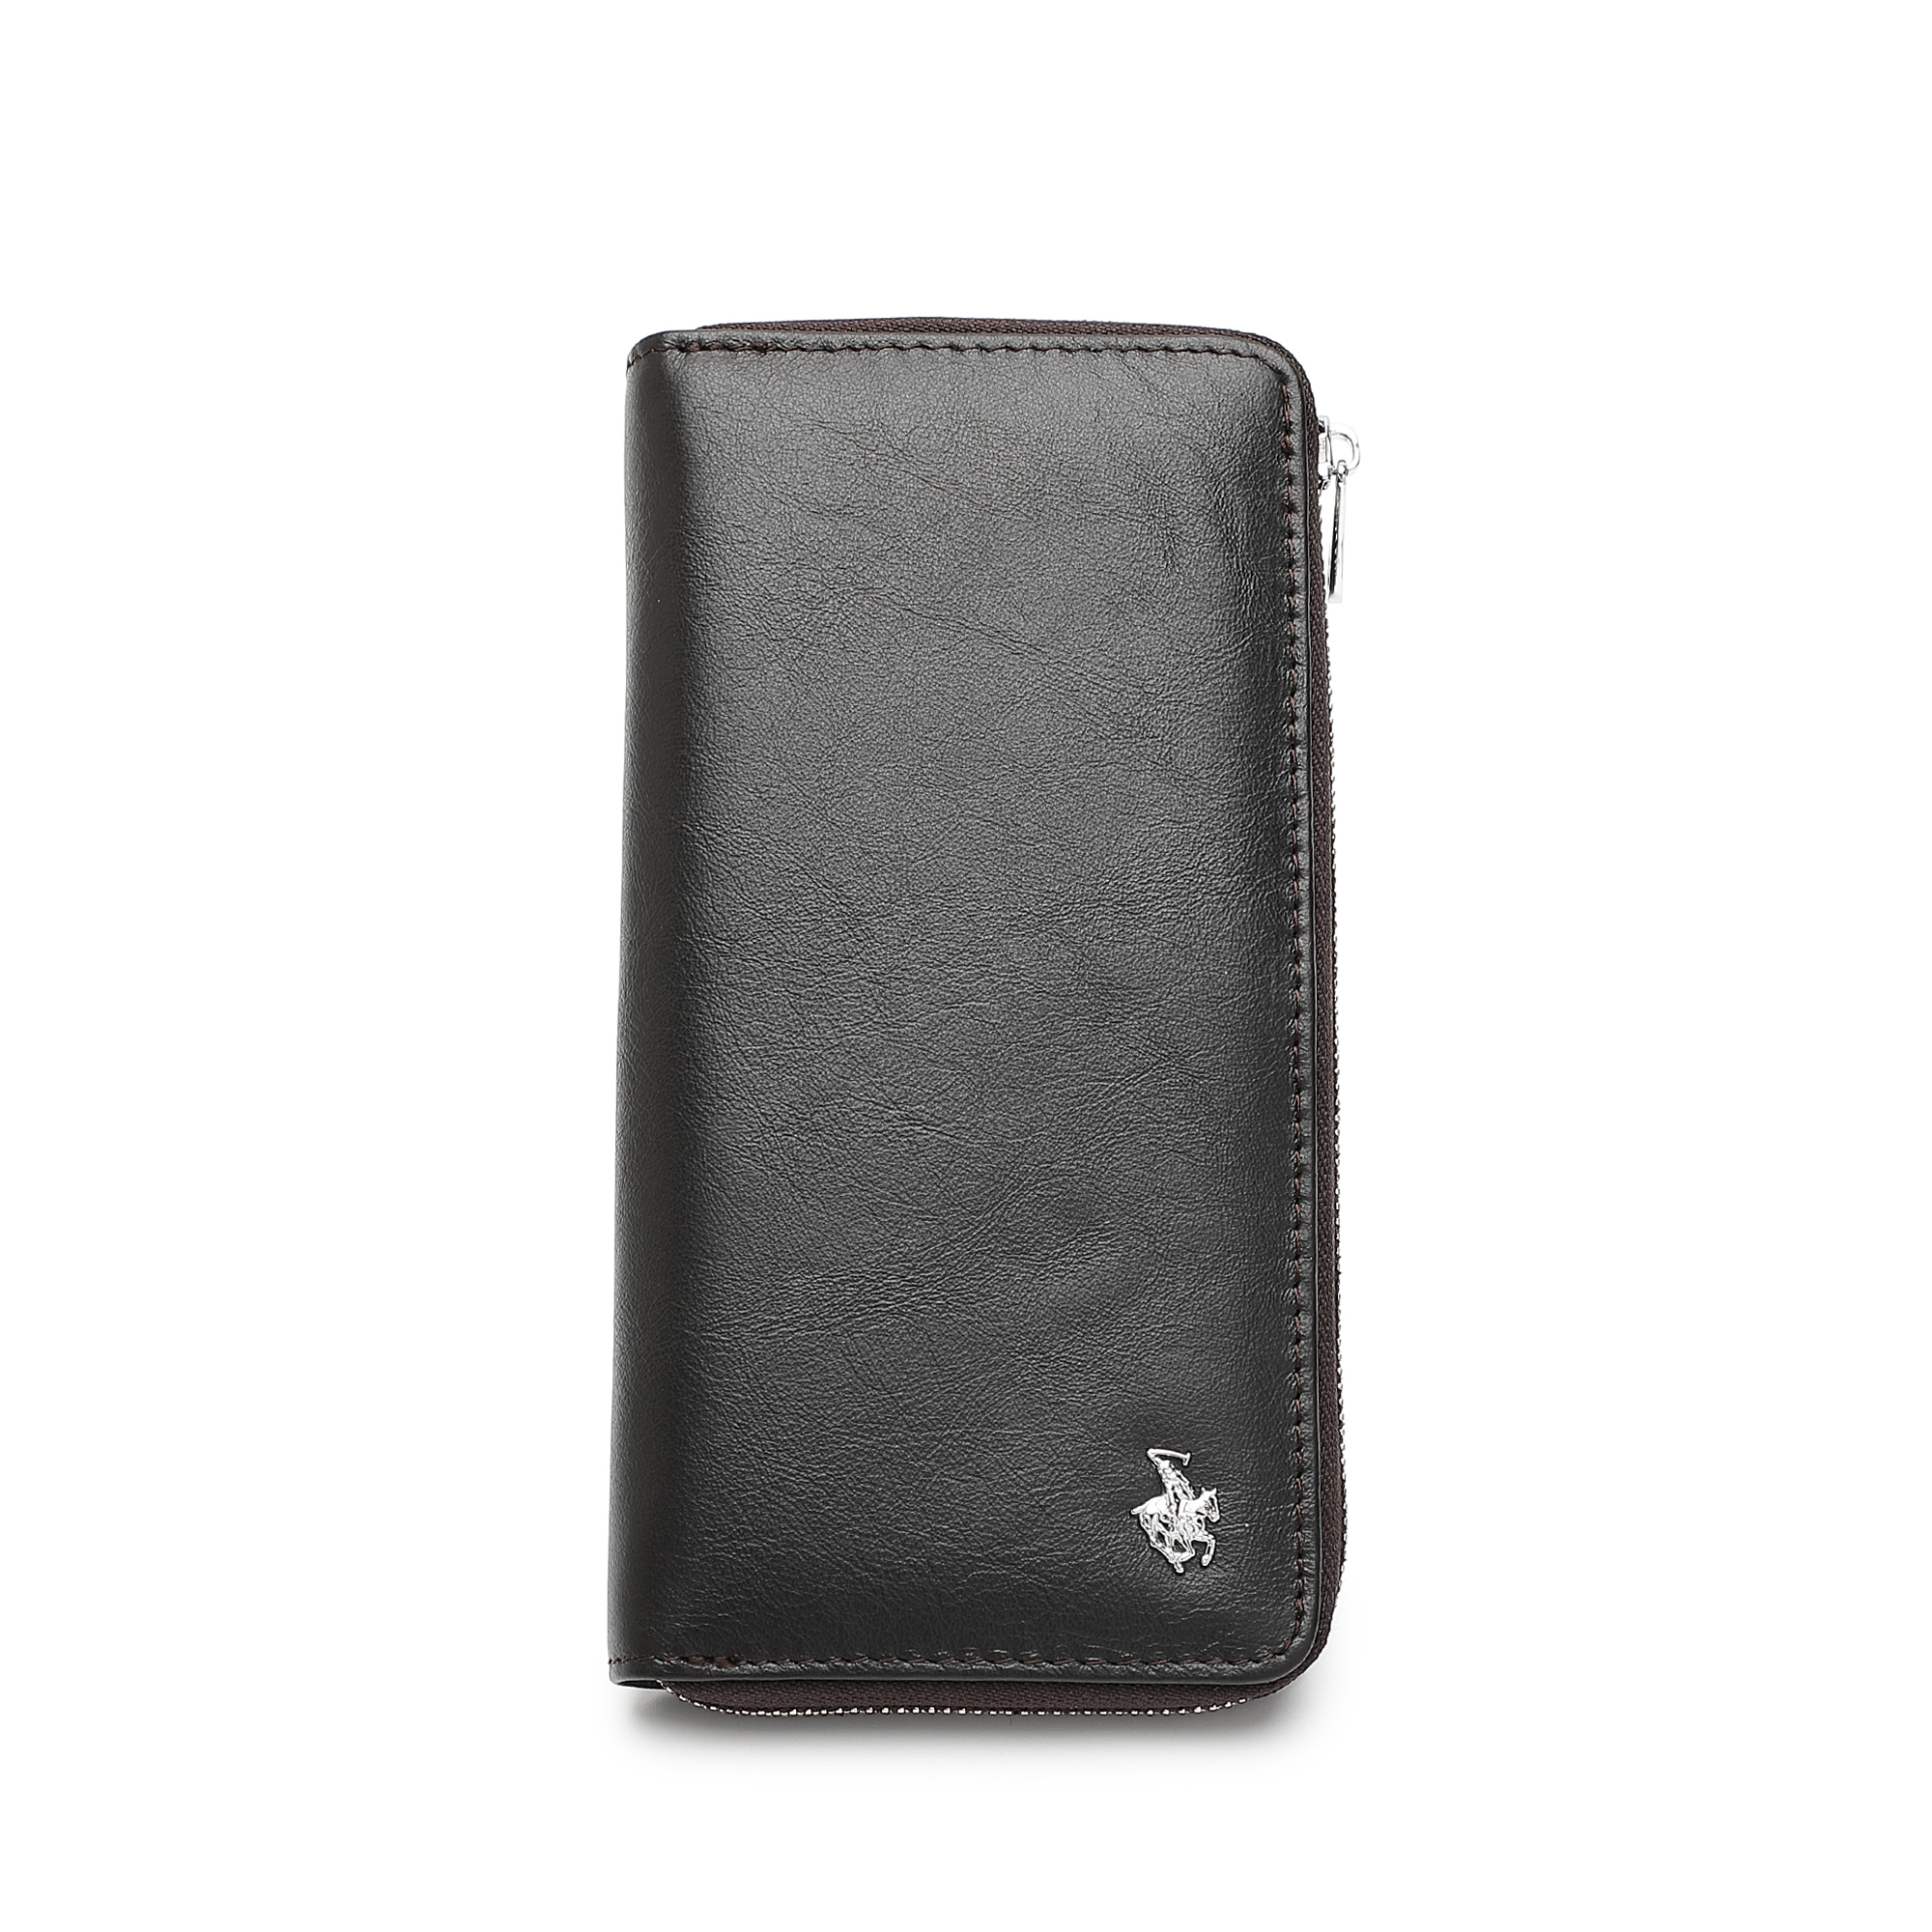 SWISS POLO Genuine Leather Zipper RFID Long Wallet SW 171-2 DARK COFFEE